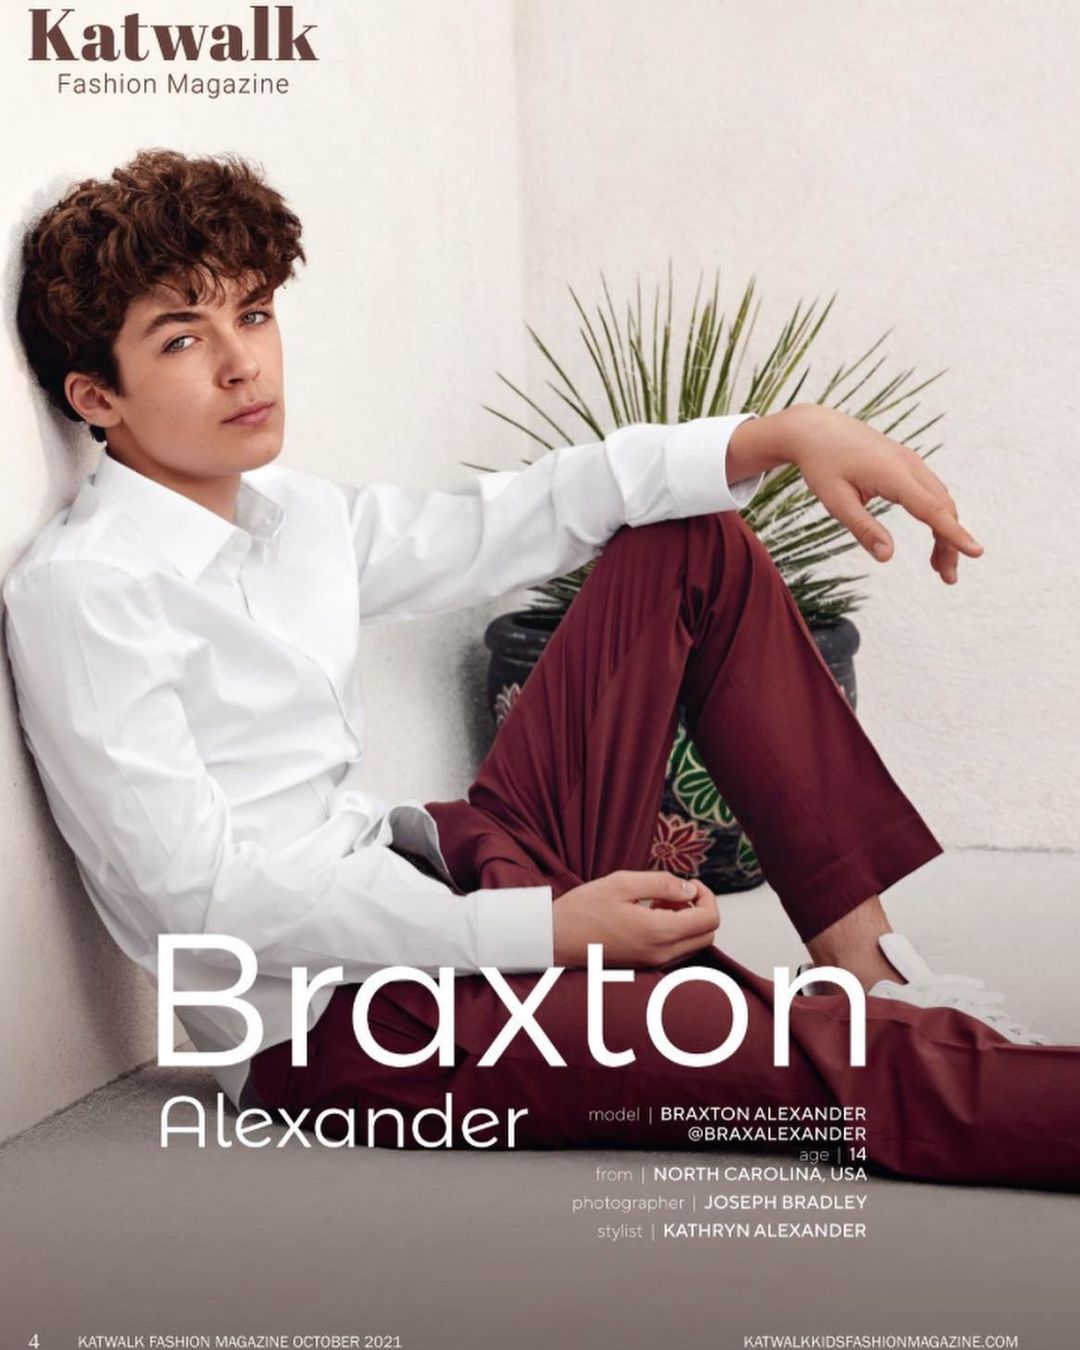 General photo of Braxton Alexander